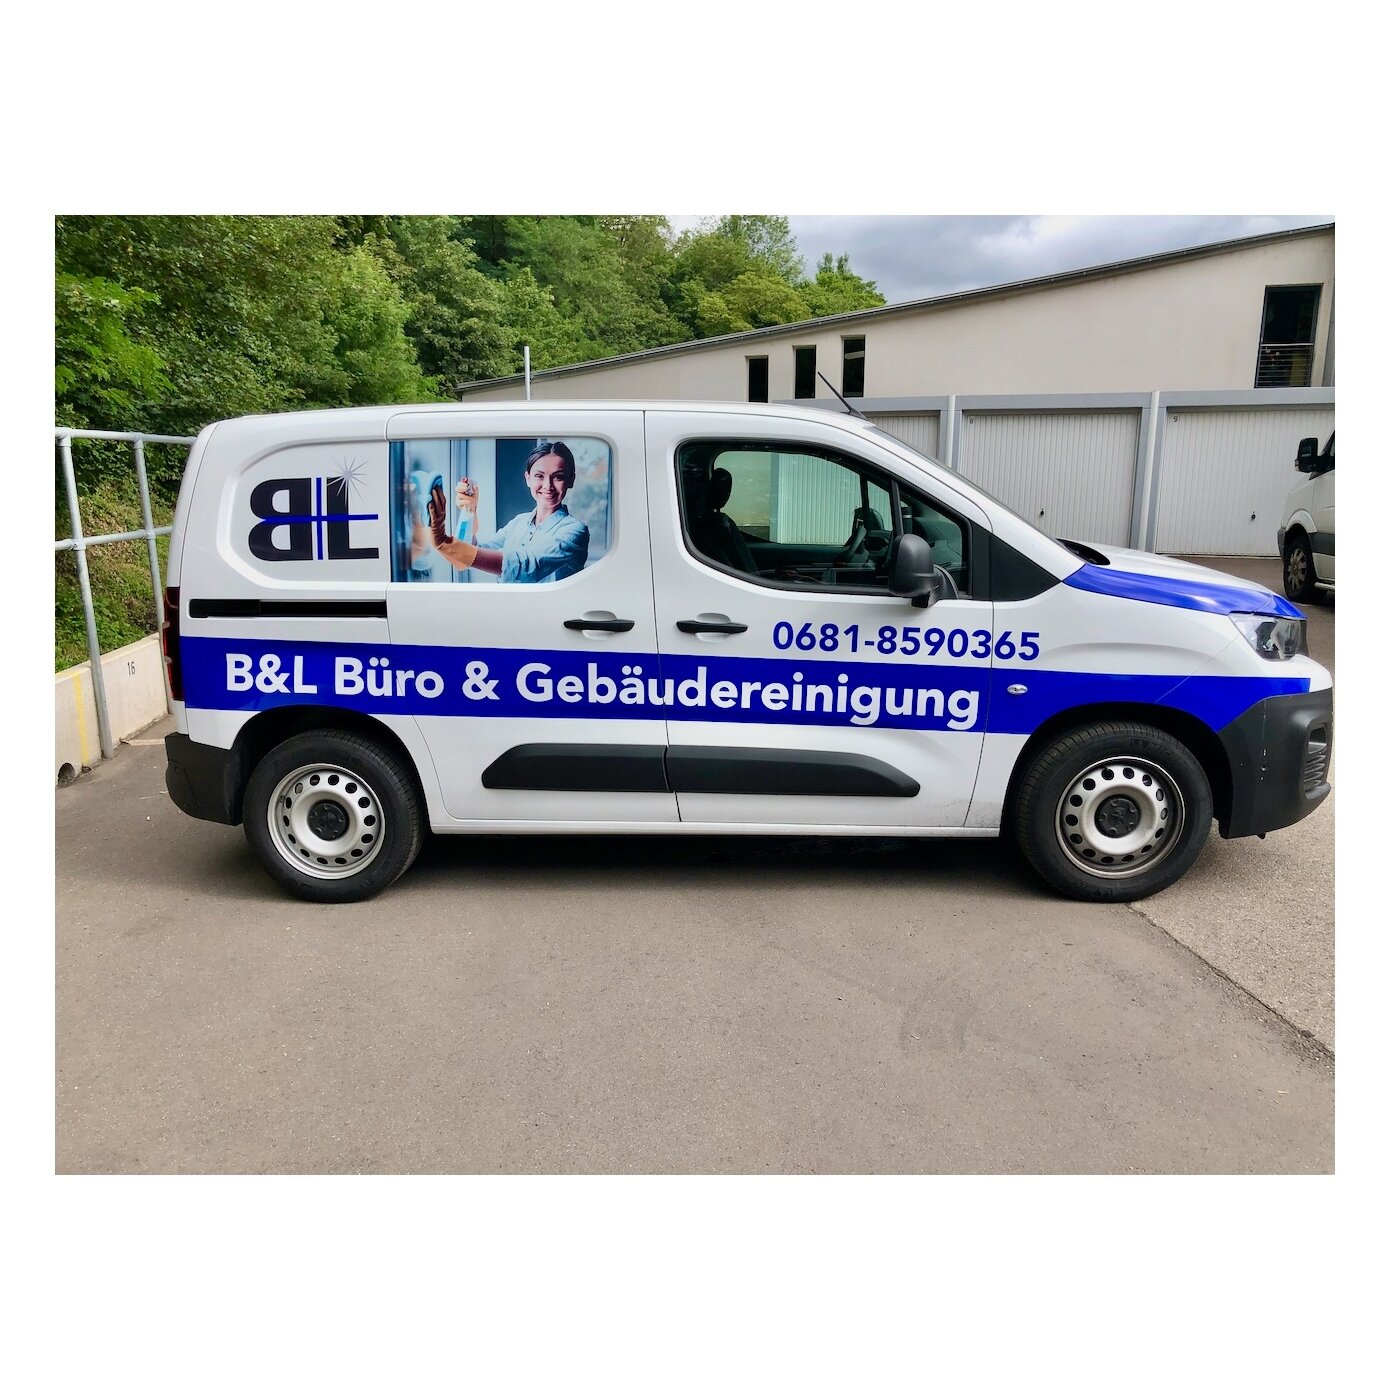 Kundenbild groß 3 B&L Büro-und Gebäudereinigung GmbH